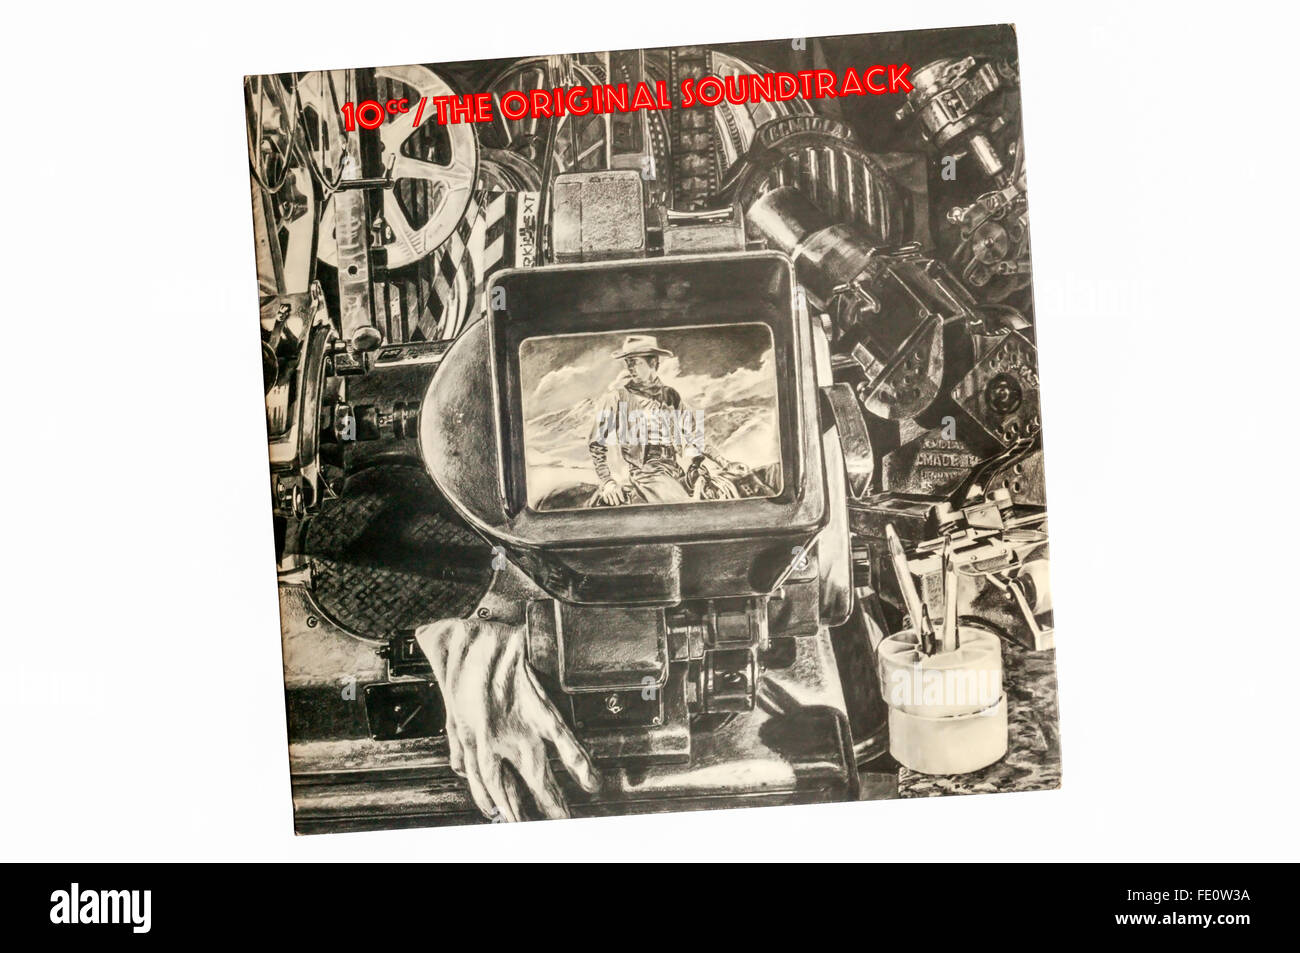 Der Original-Soundtrack wurde das dritte Studioalbum der englischen Art Rock Band 10cc. Es wurde im Jahr 1975 veröffentlicht. Stockfoto